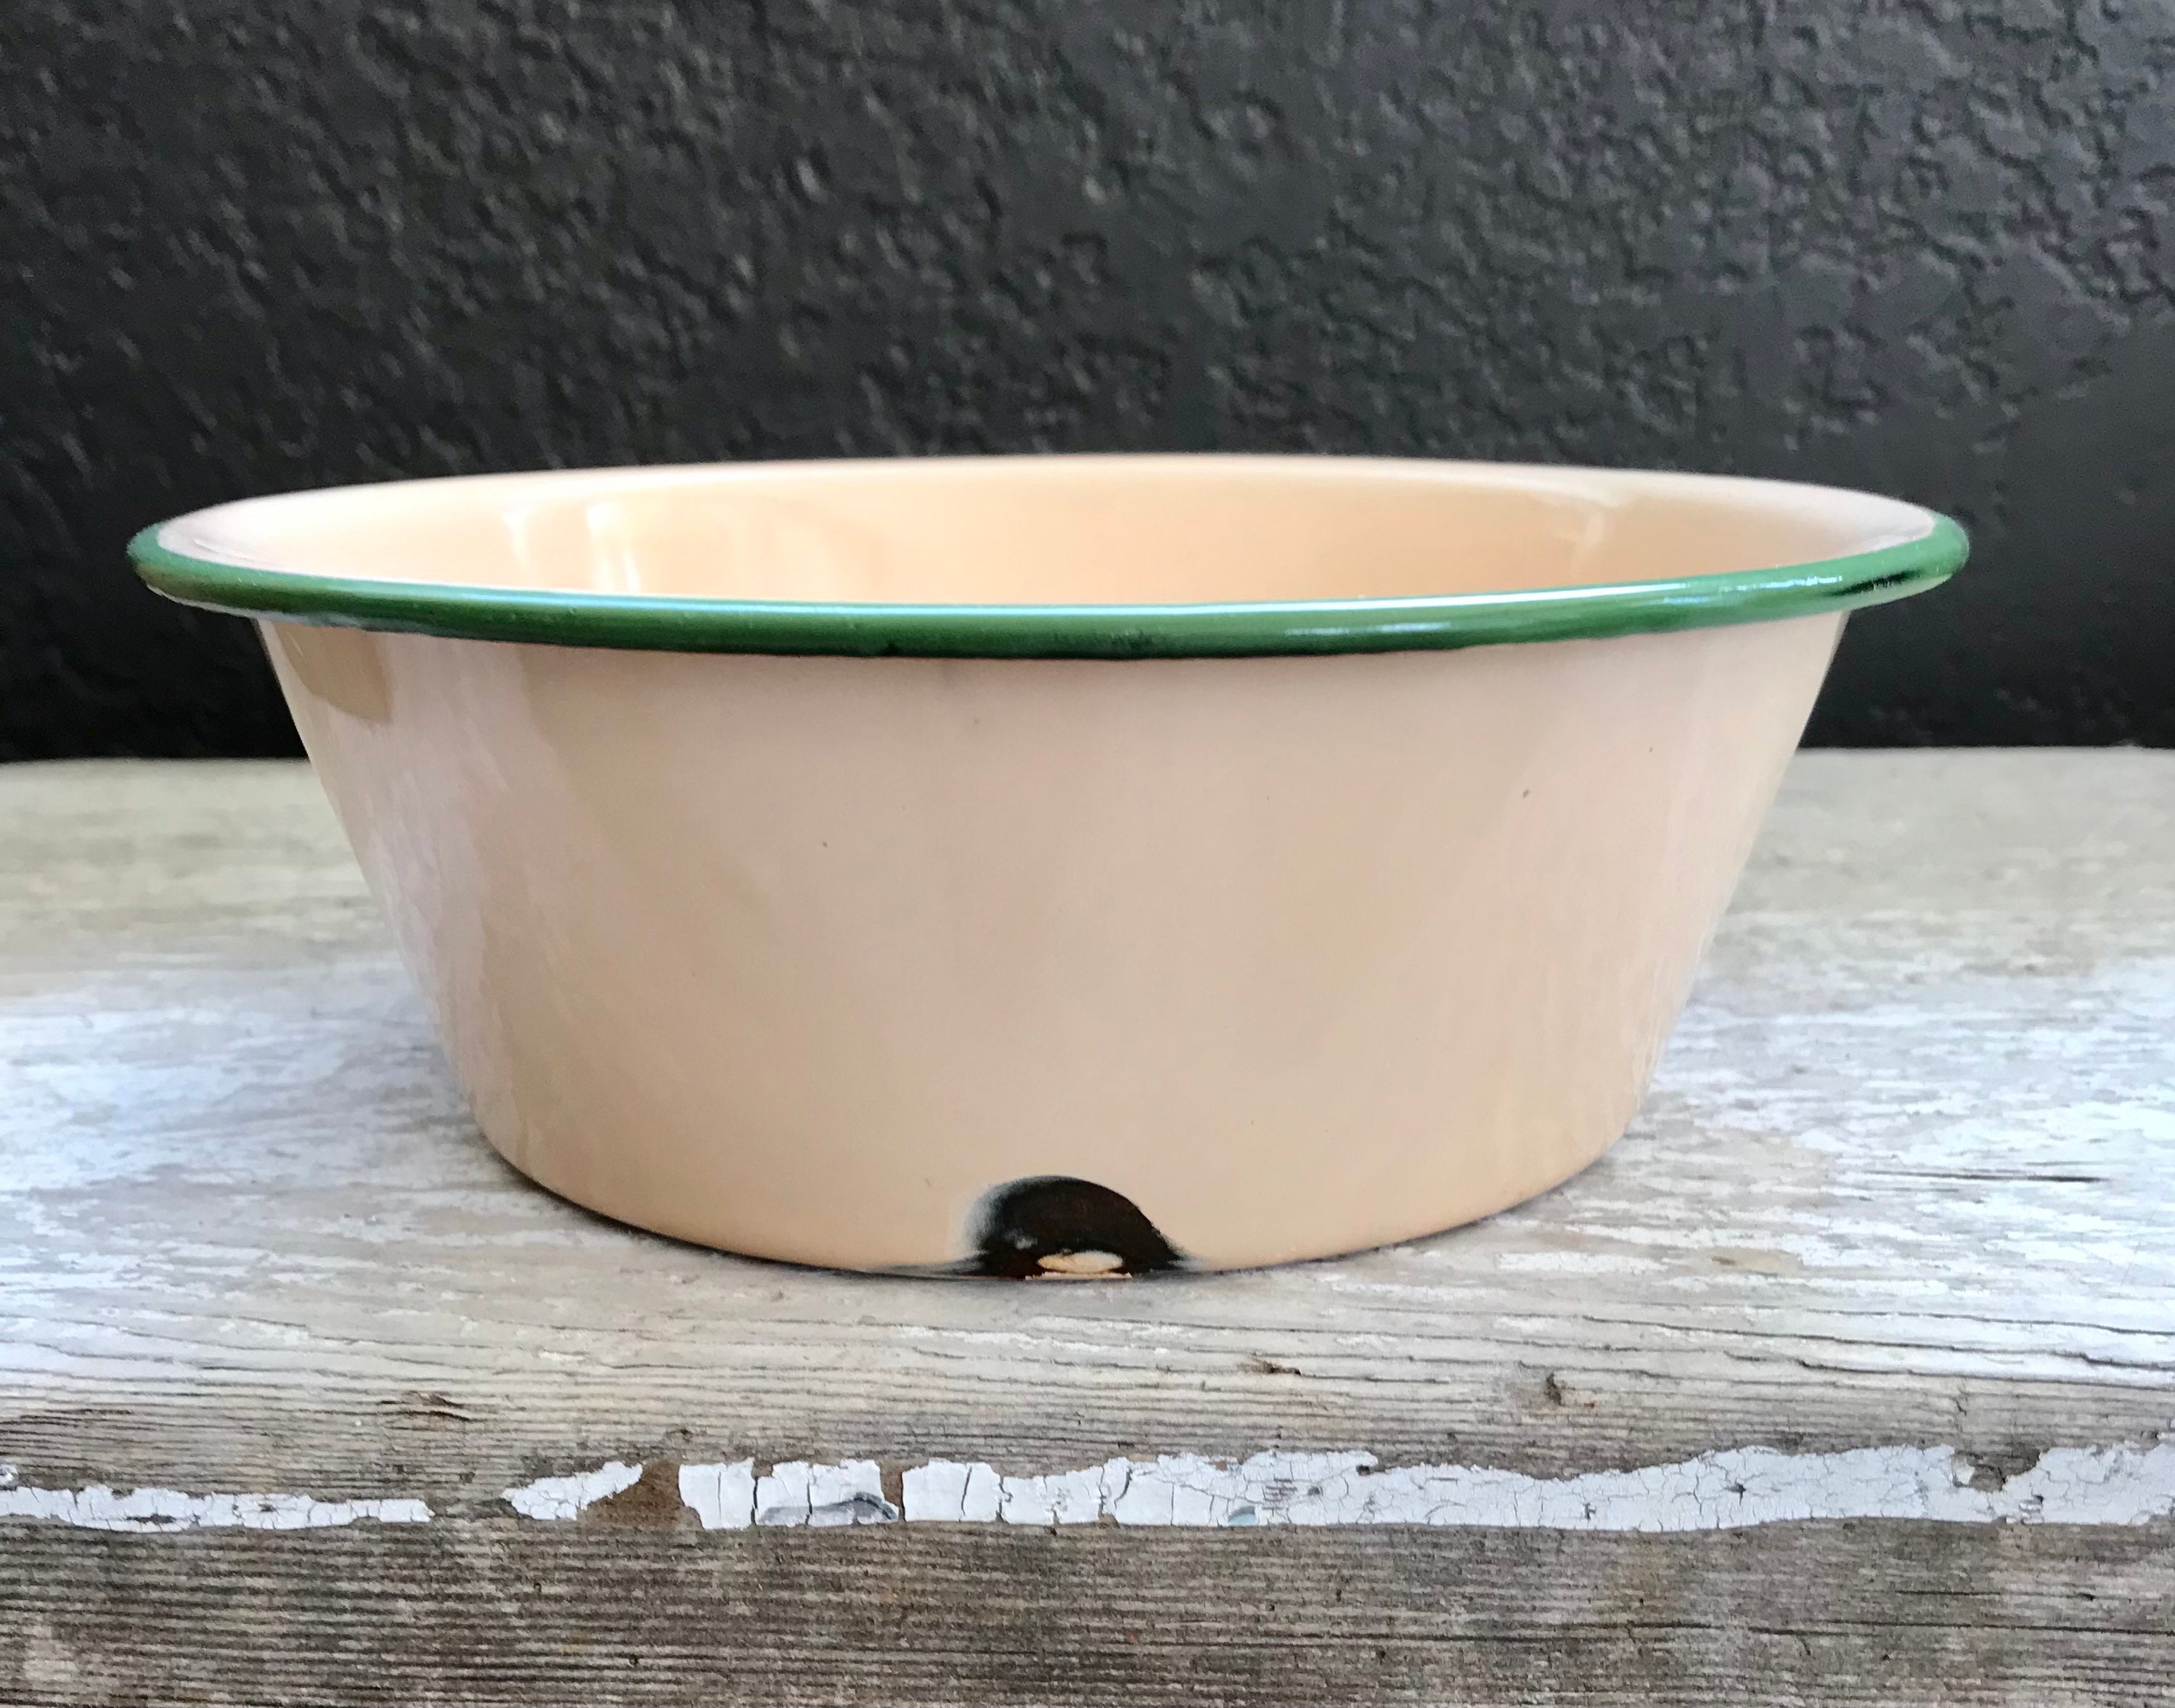 Vintage Enamelware Tan/beige and Green Metal Small Dish Pan, Metal